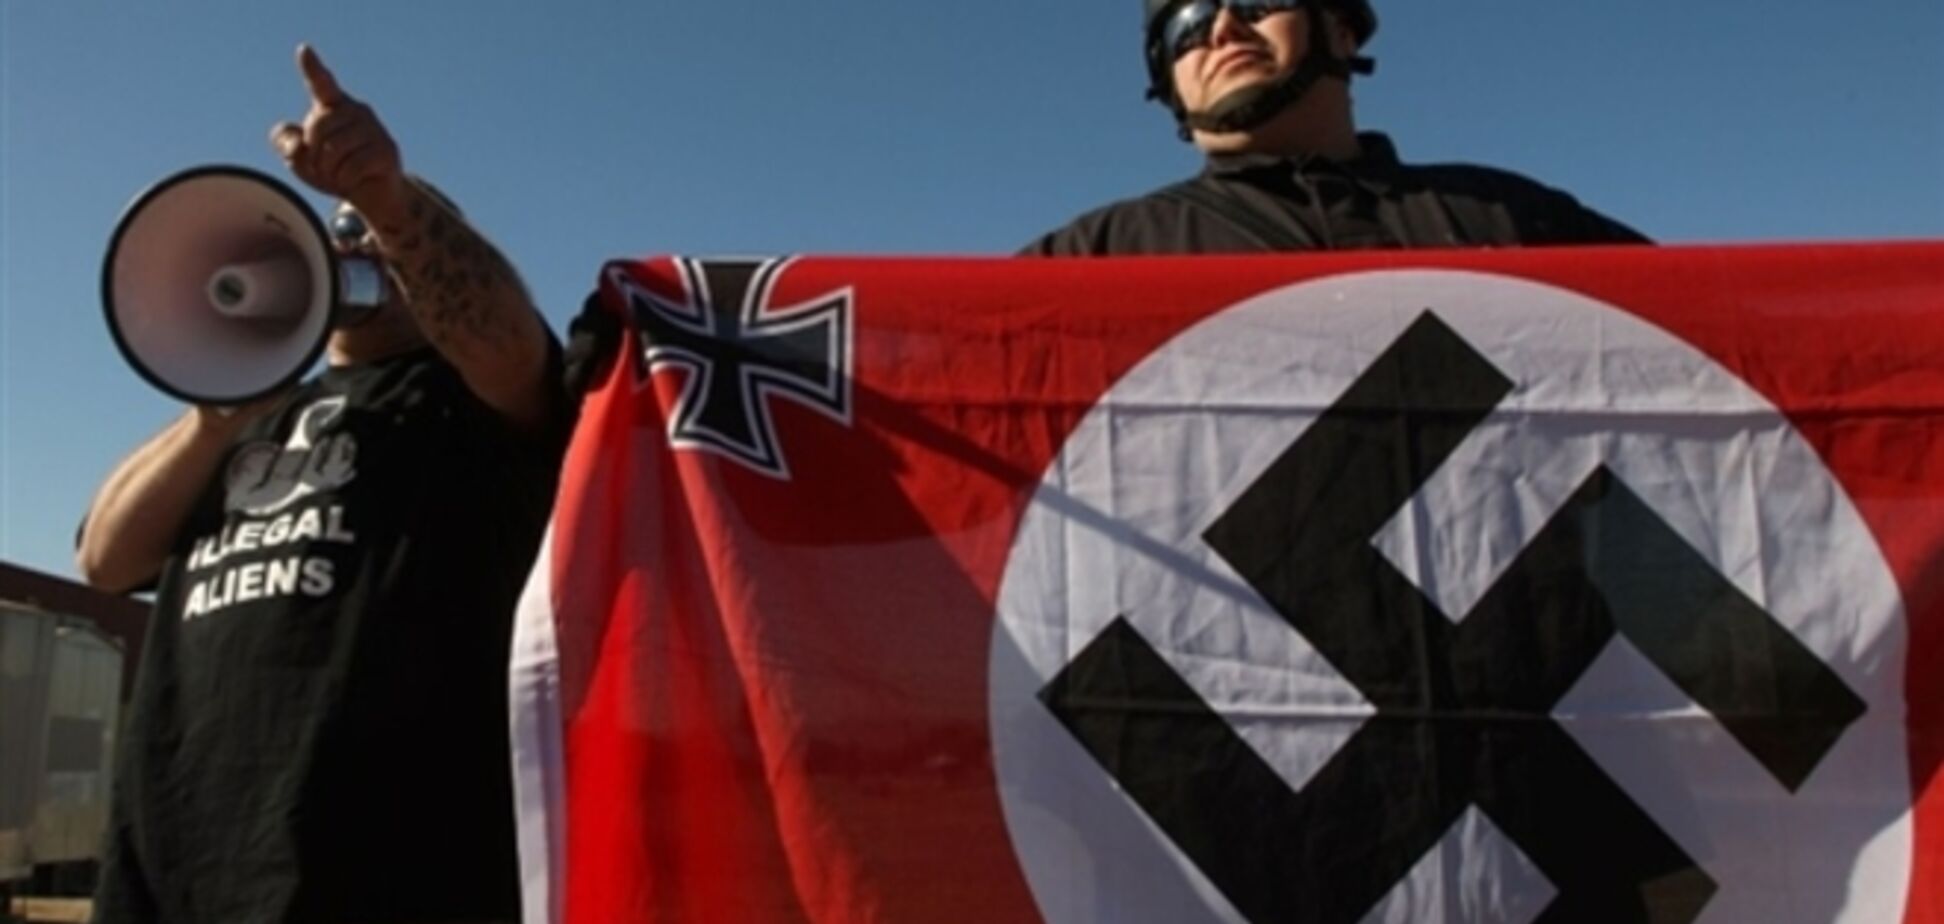 У Росії ввели штрафи за публічну демонстрацію нацистської символіки